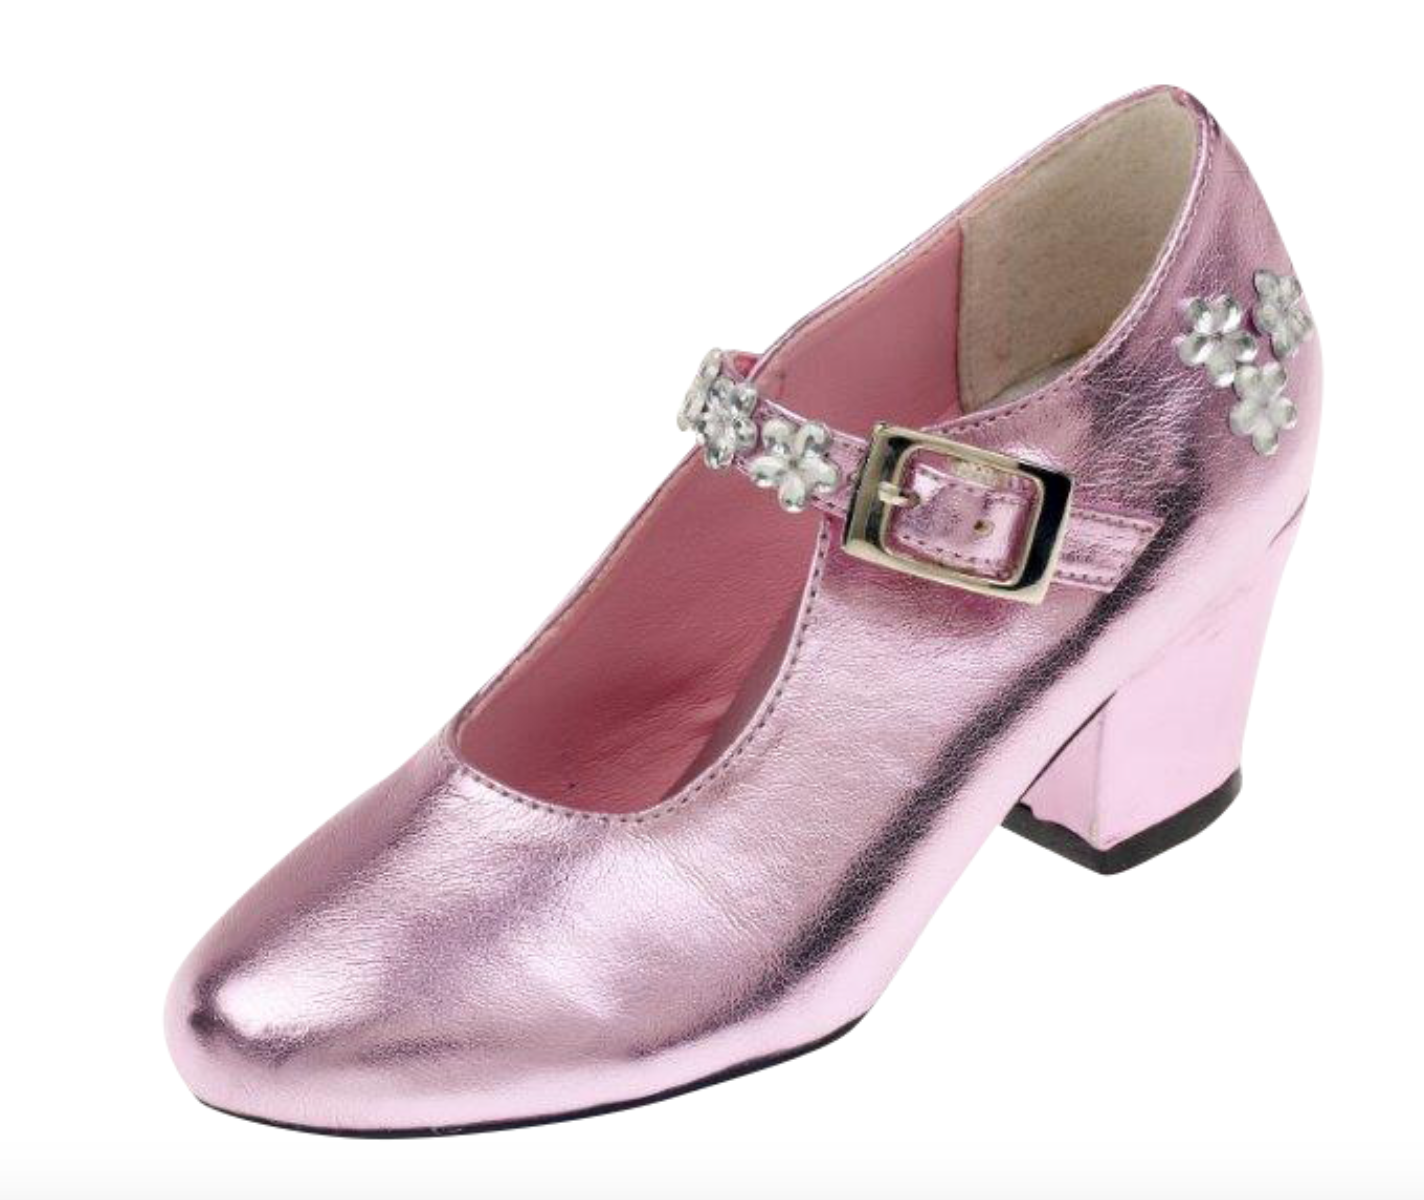 Schoenen roze metallic, hoge hak, mt 25